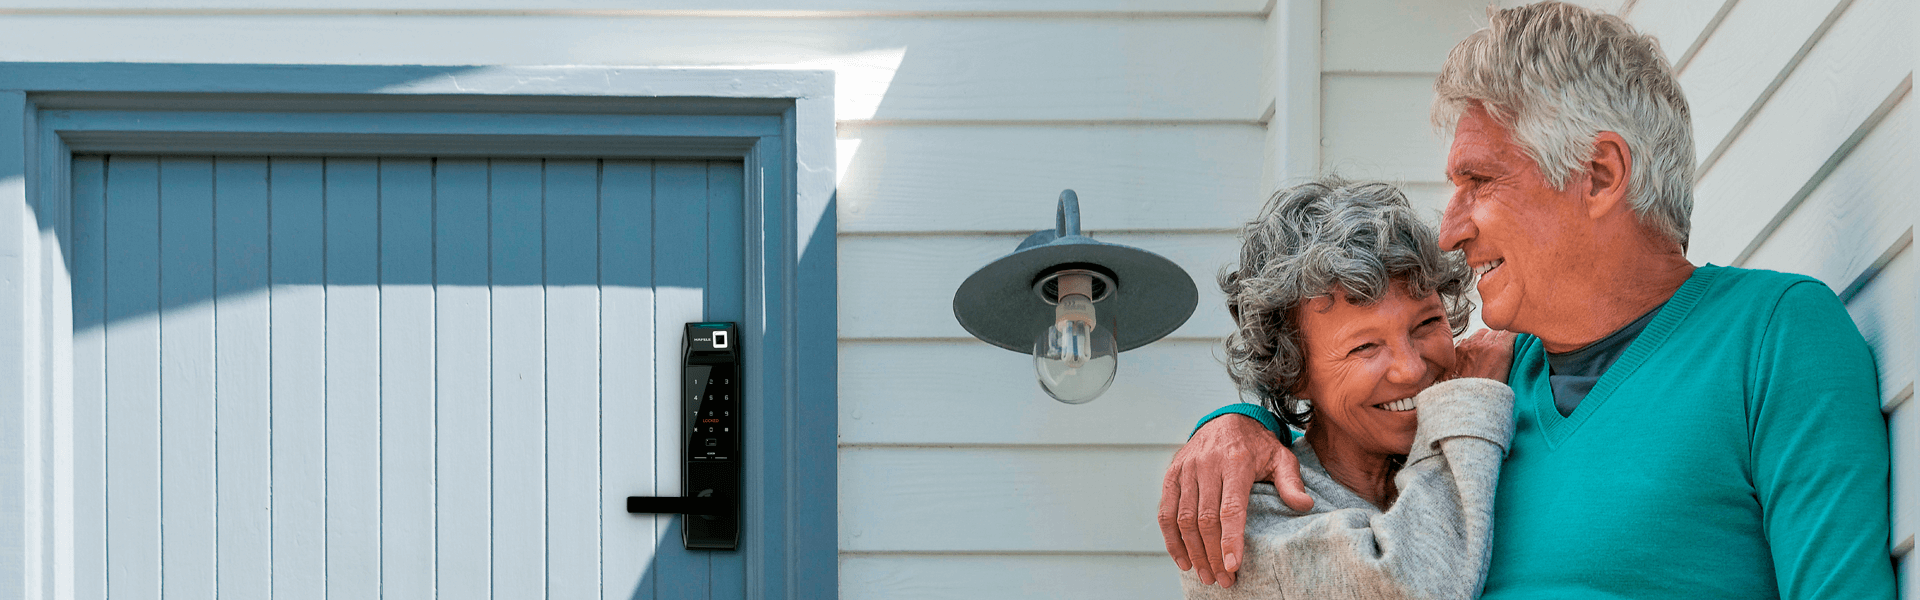 Hafele's RE-AL smart lock installed on the door